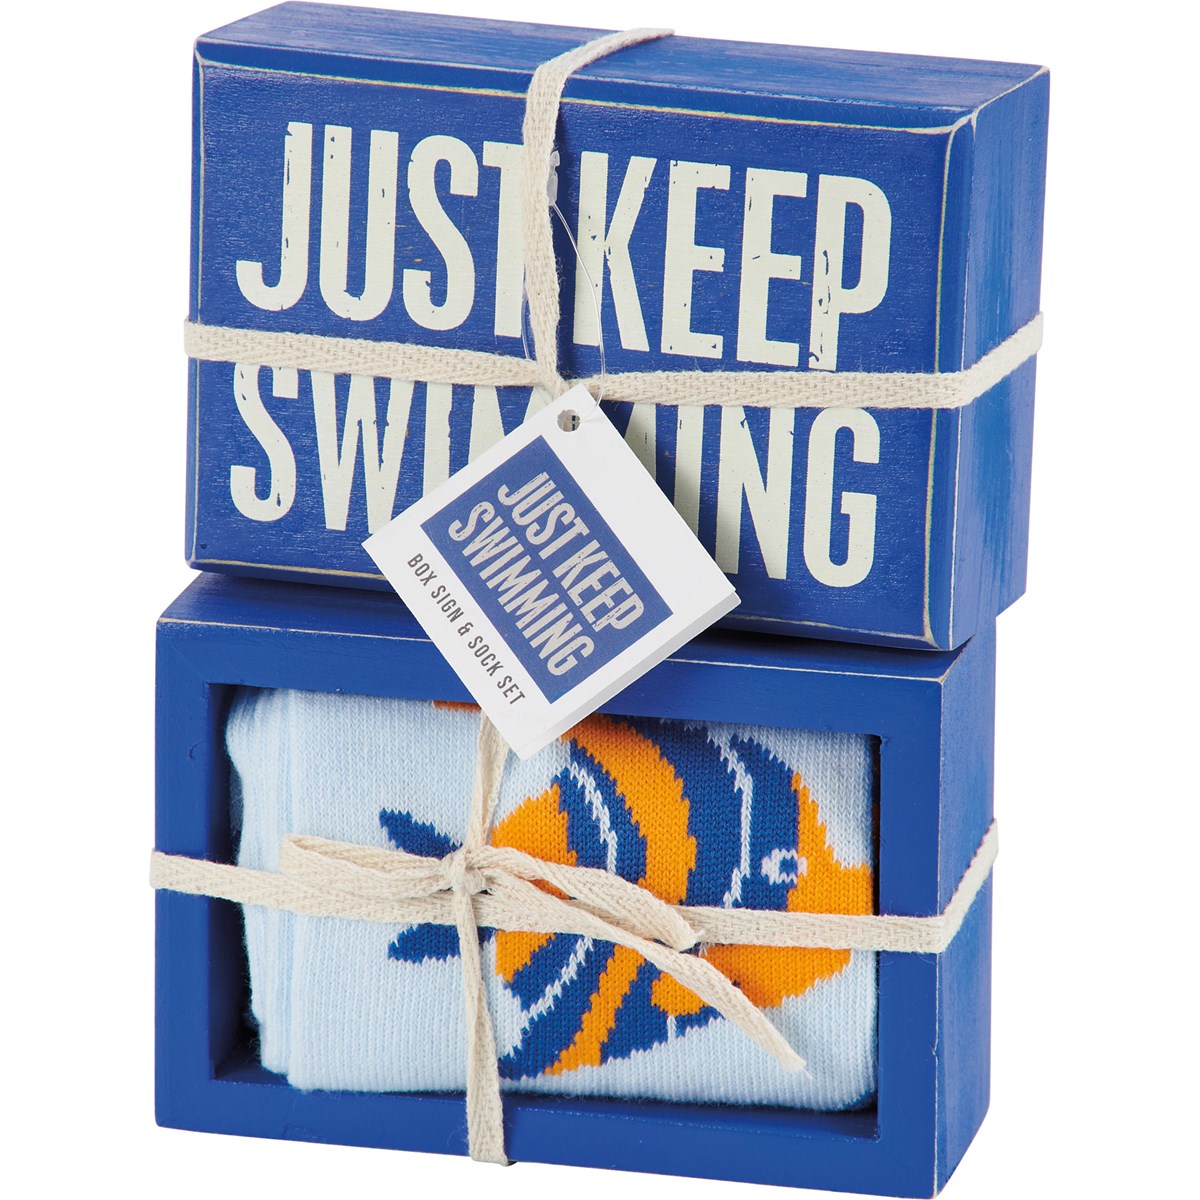 Just Keep Swimming Box Sign And Sock Set - Wood, Cotton, Nylon, Spandex, Ribbon